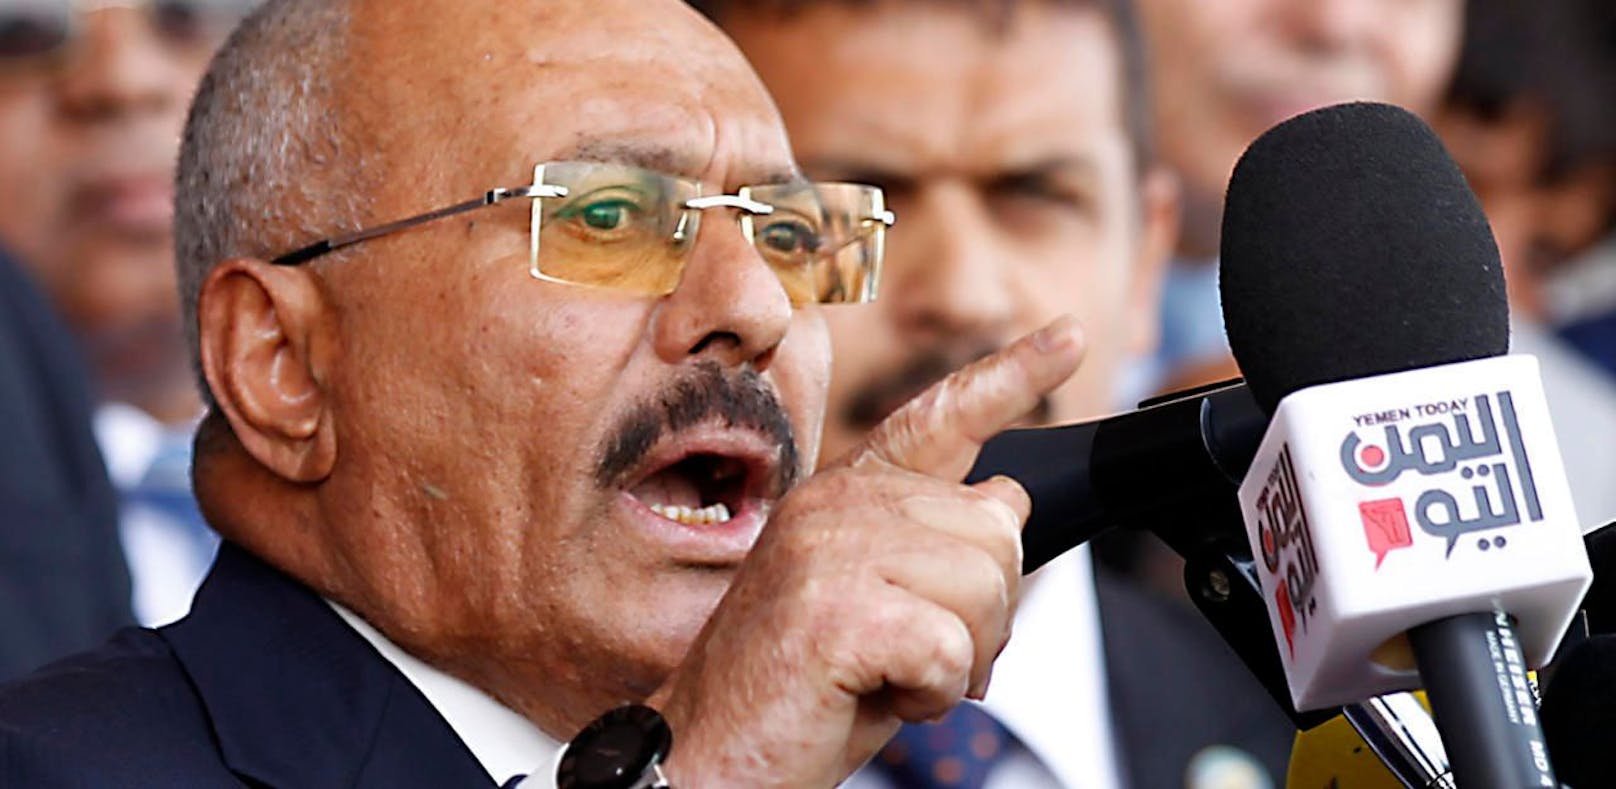 Jemens Ex-Präsident Ali Abdullah Saleh wurde bei einem Gefecht in Sanaa getötet.